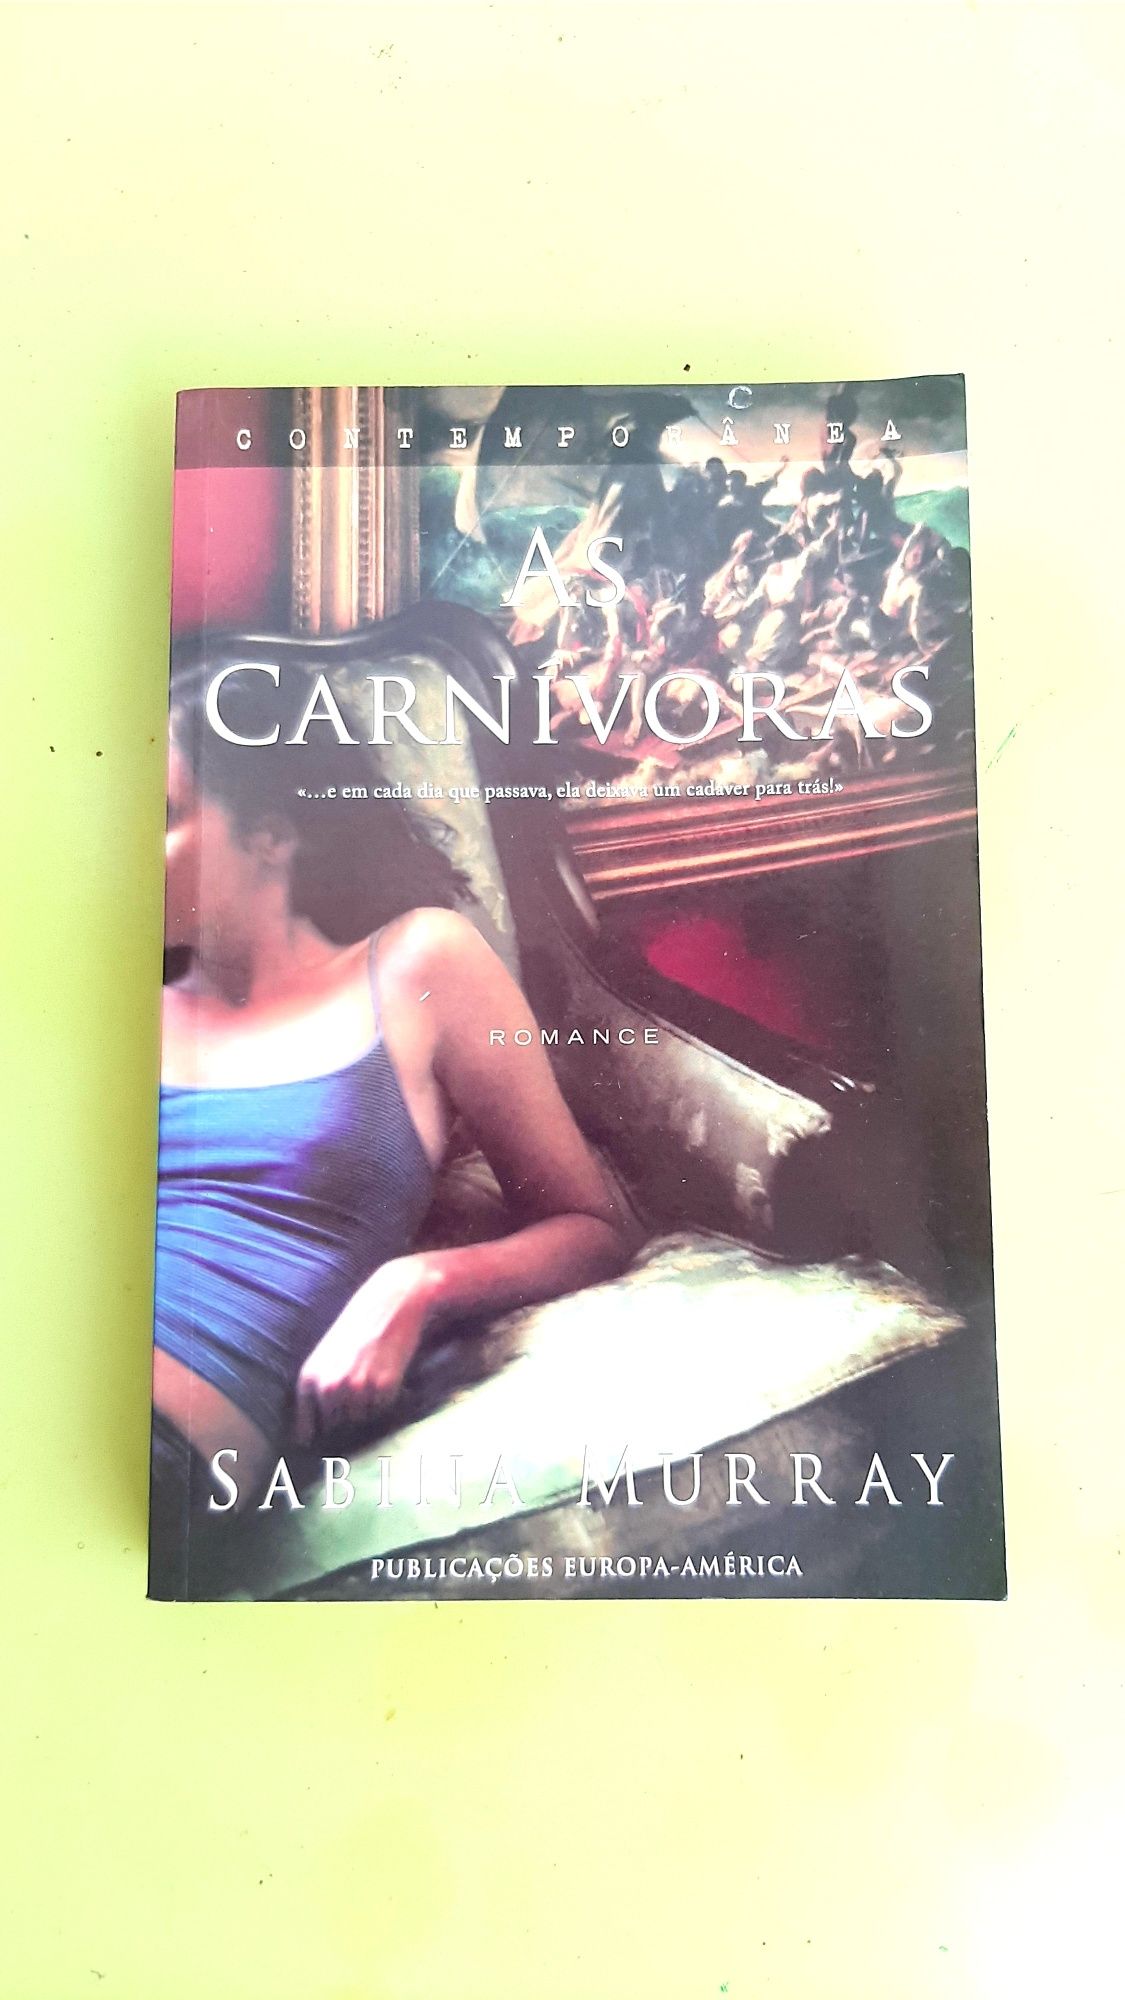 Livro romance "As carnívoras"